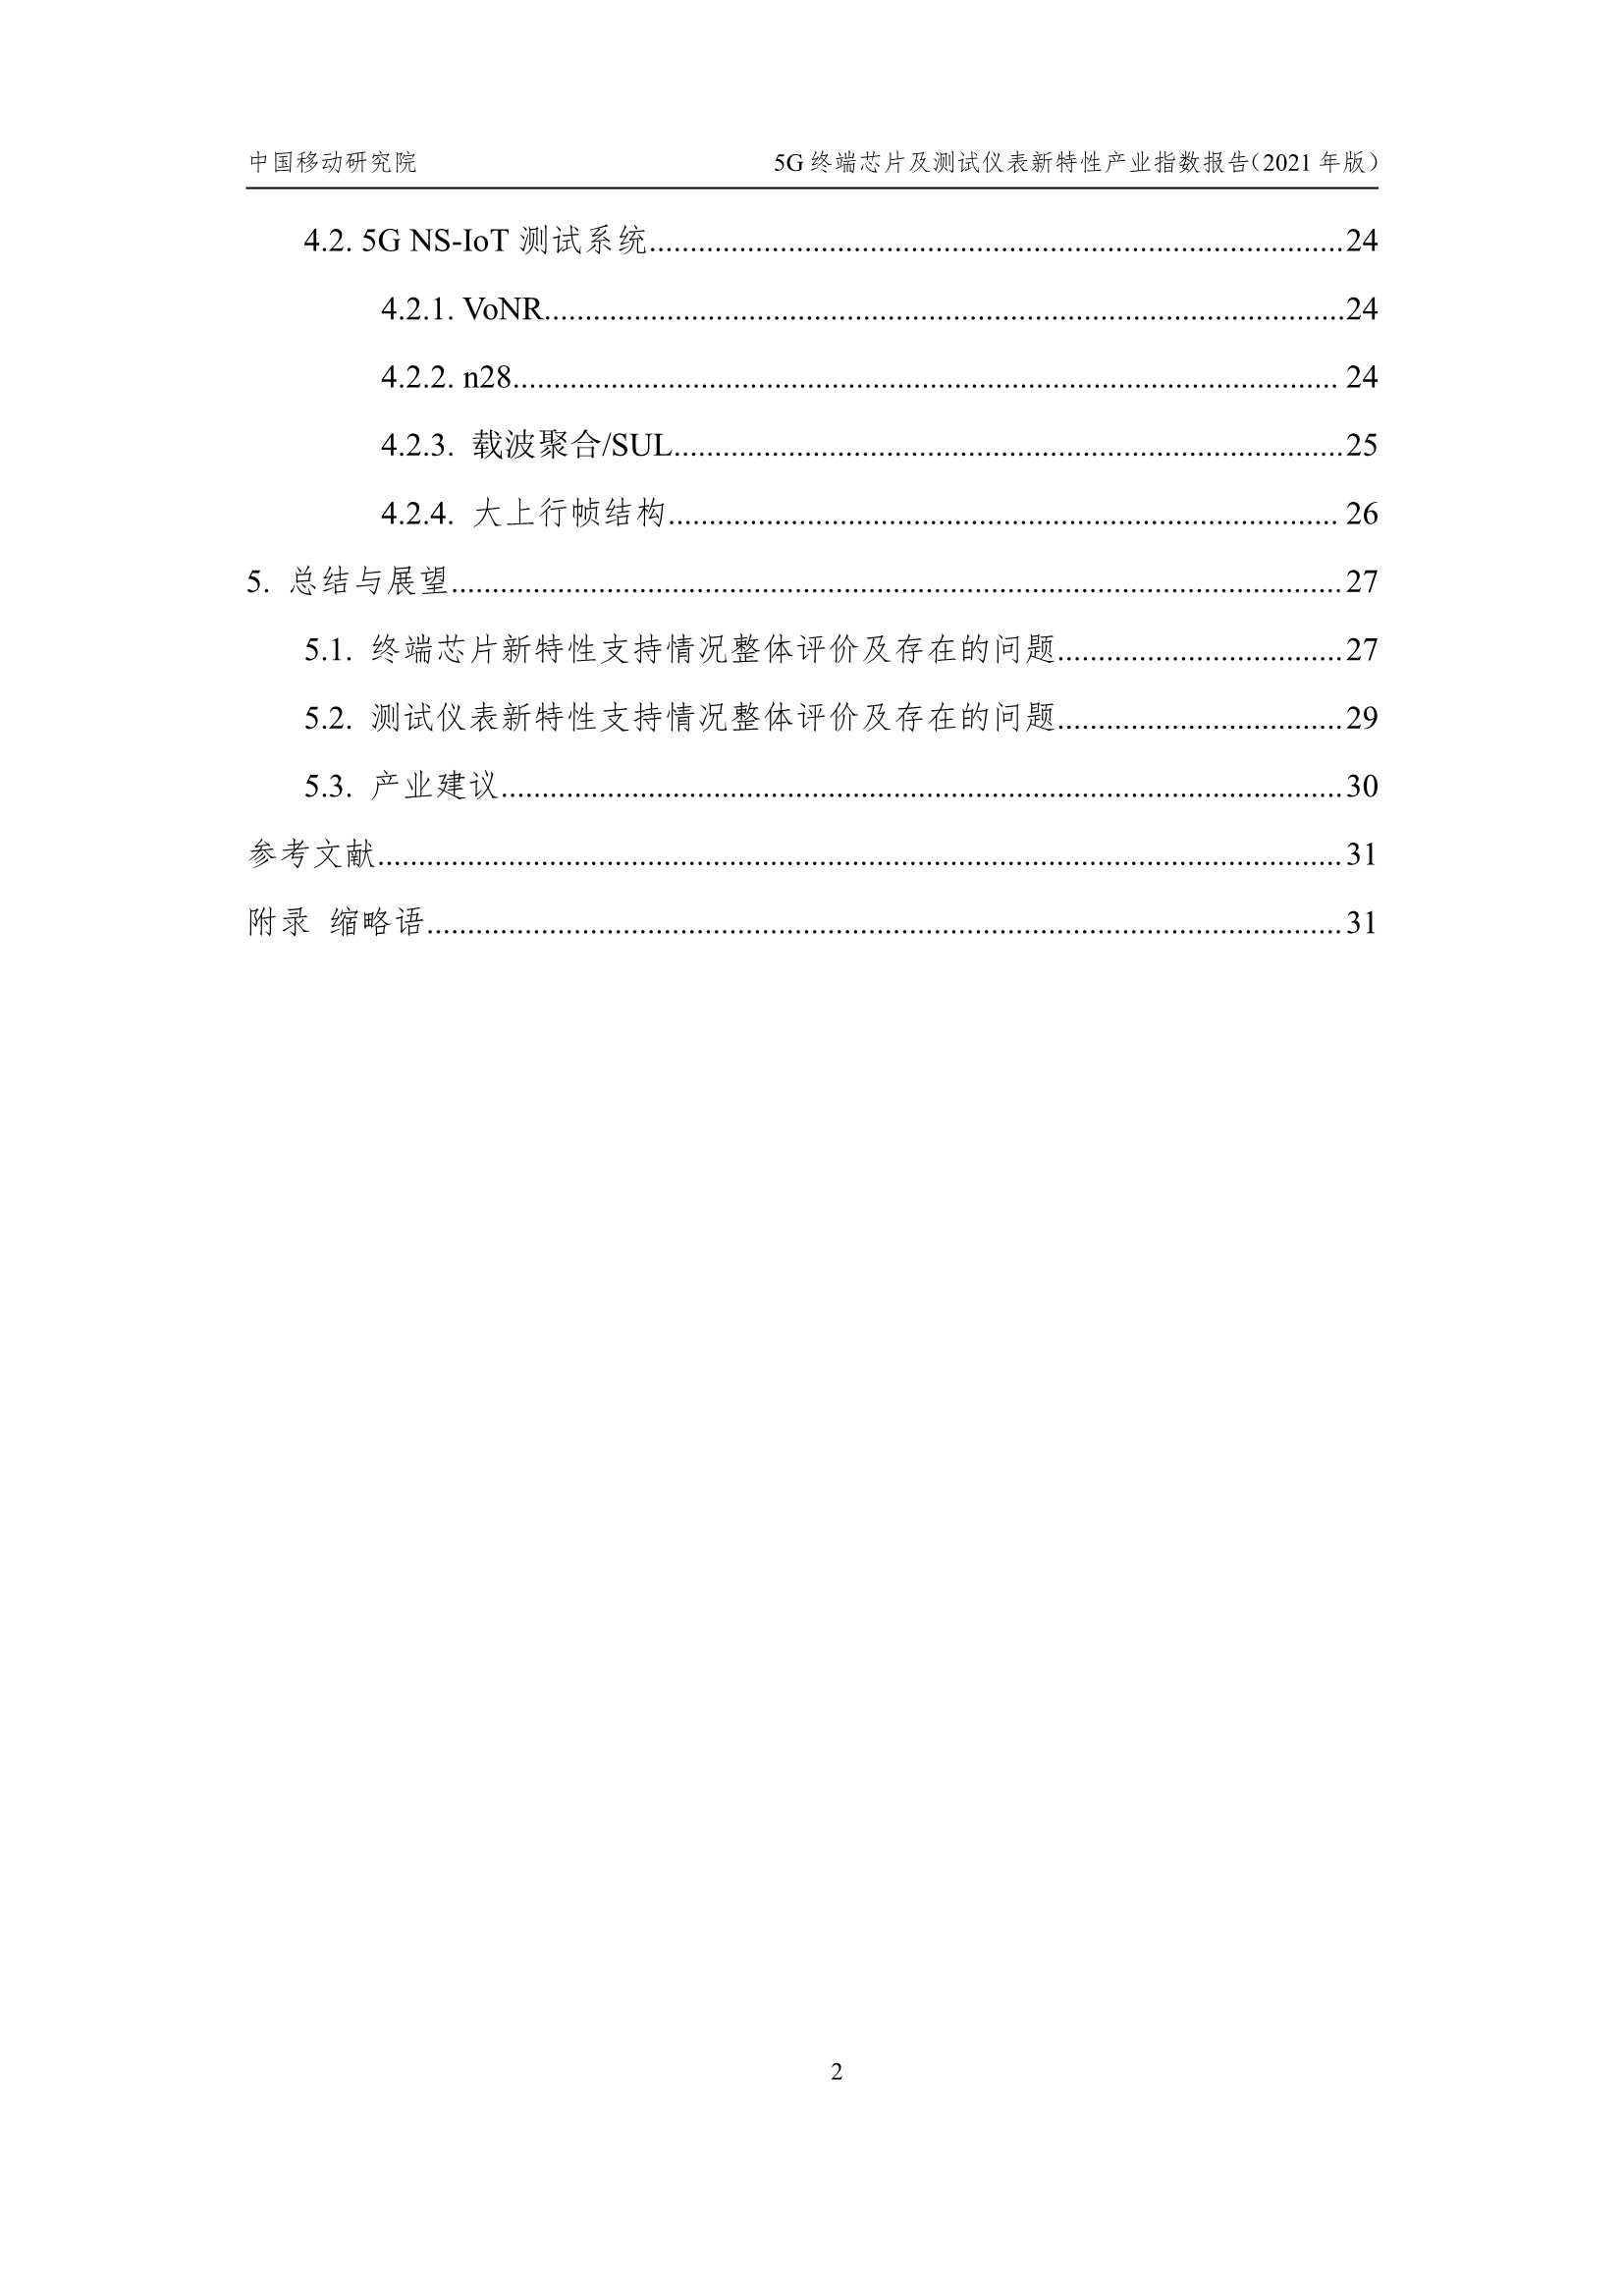 中国移动-5G终端芯片及测试仪表新特性产业指数报告-2021.12-33页